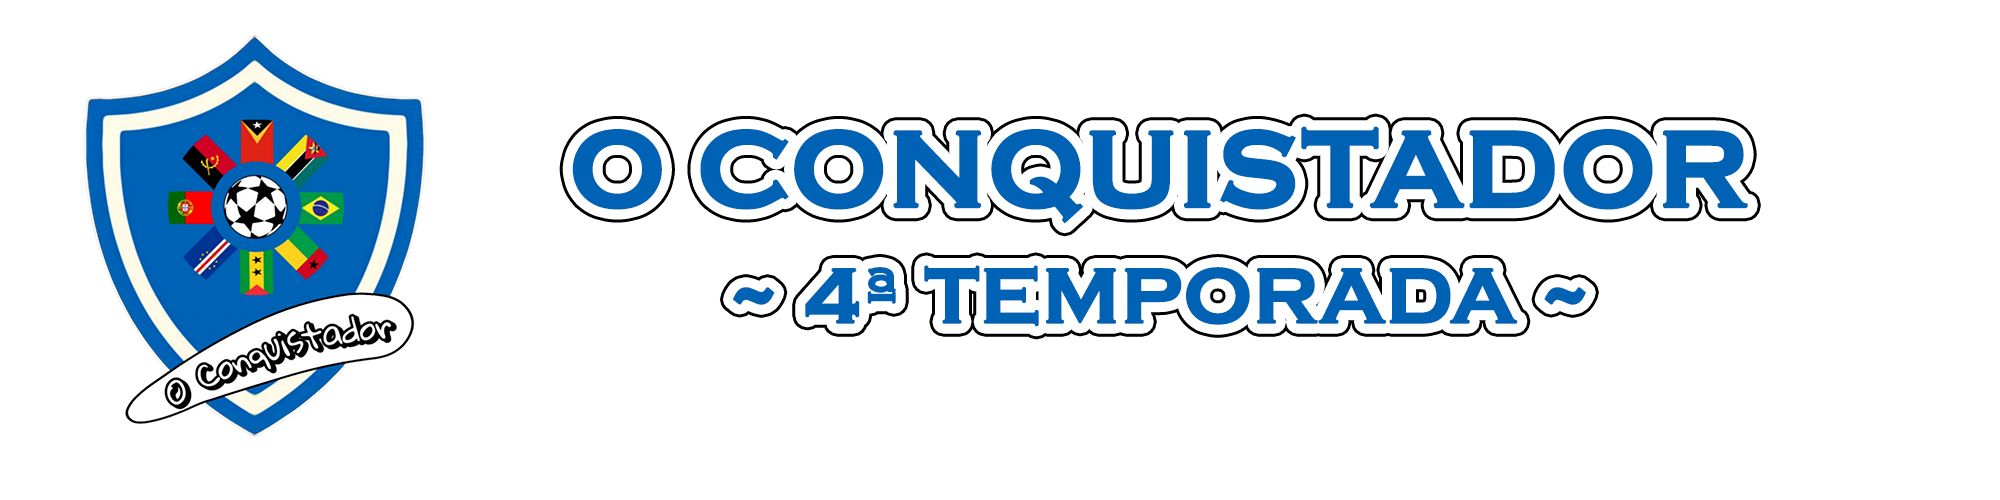 conquistador-logo